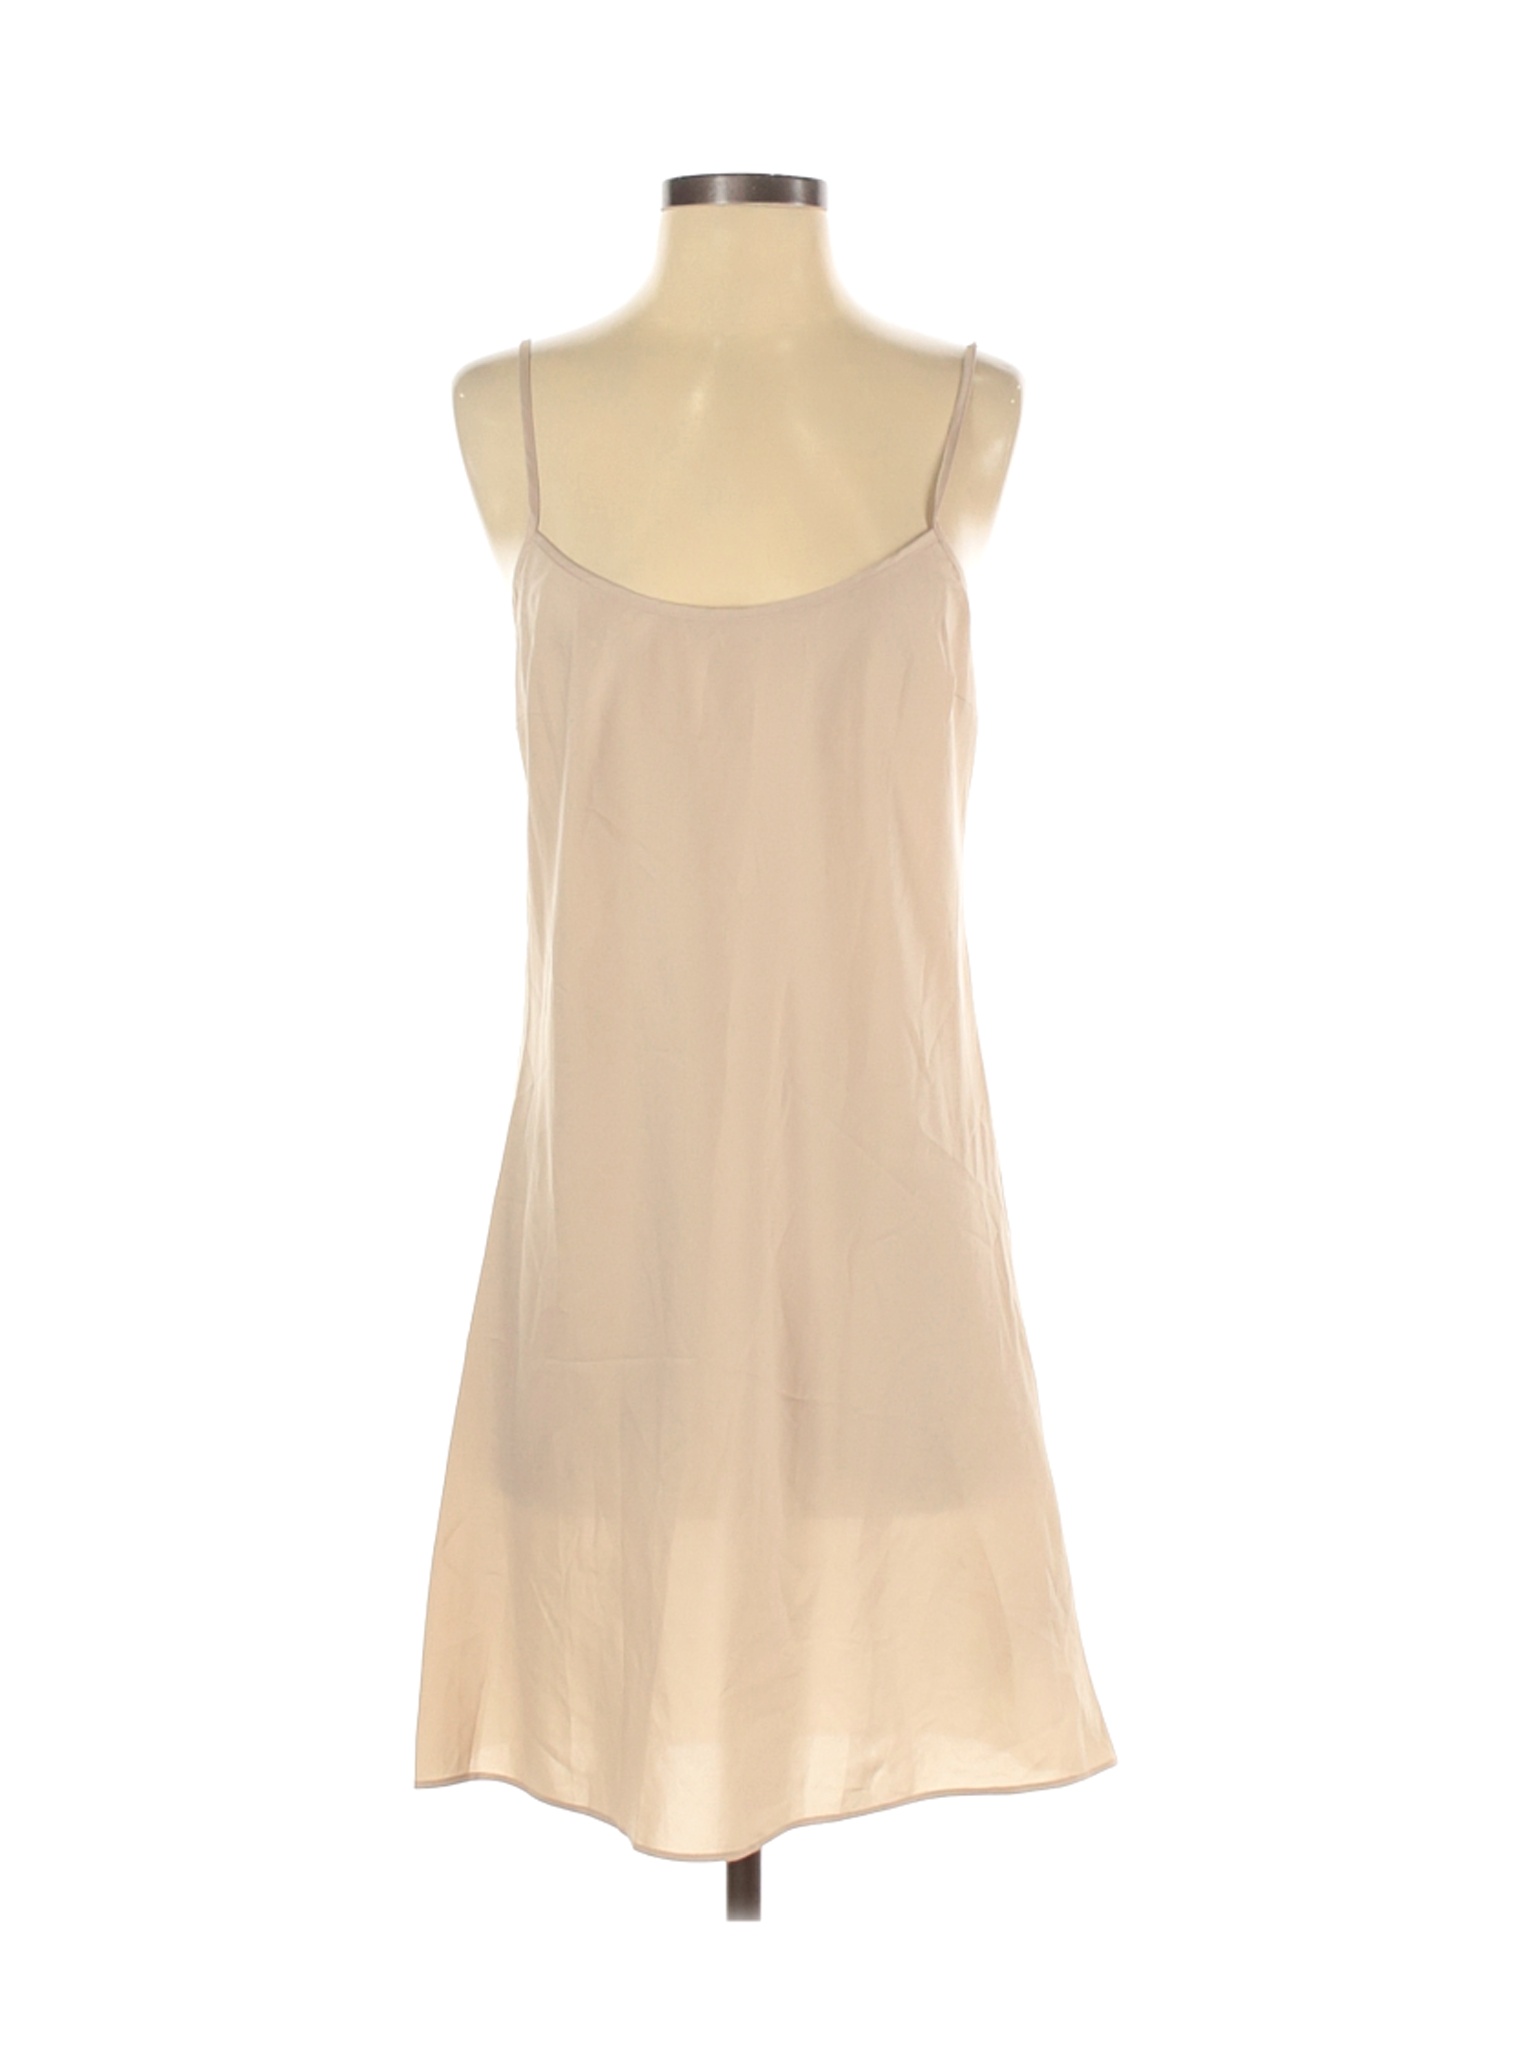 DKNYC Women Brown Casual Dress S | eBay